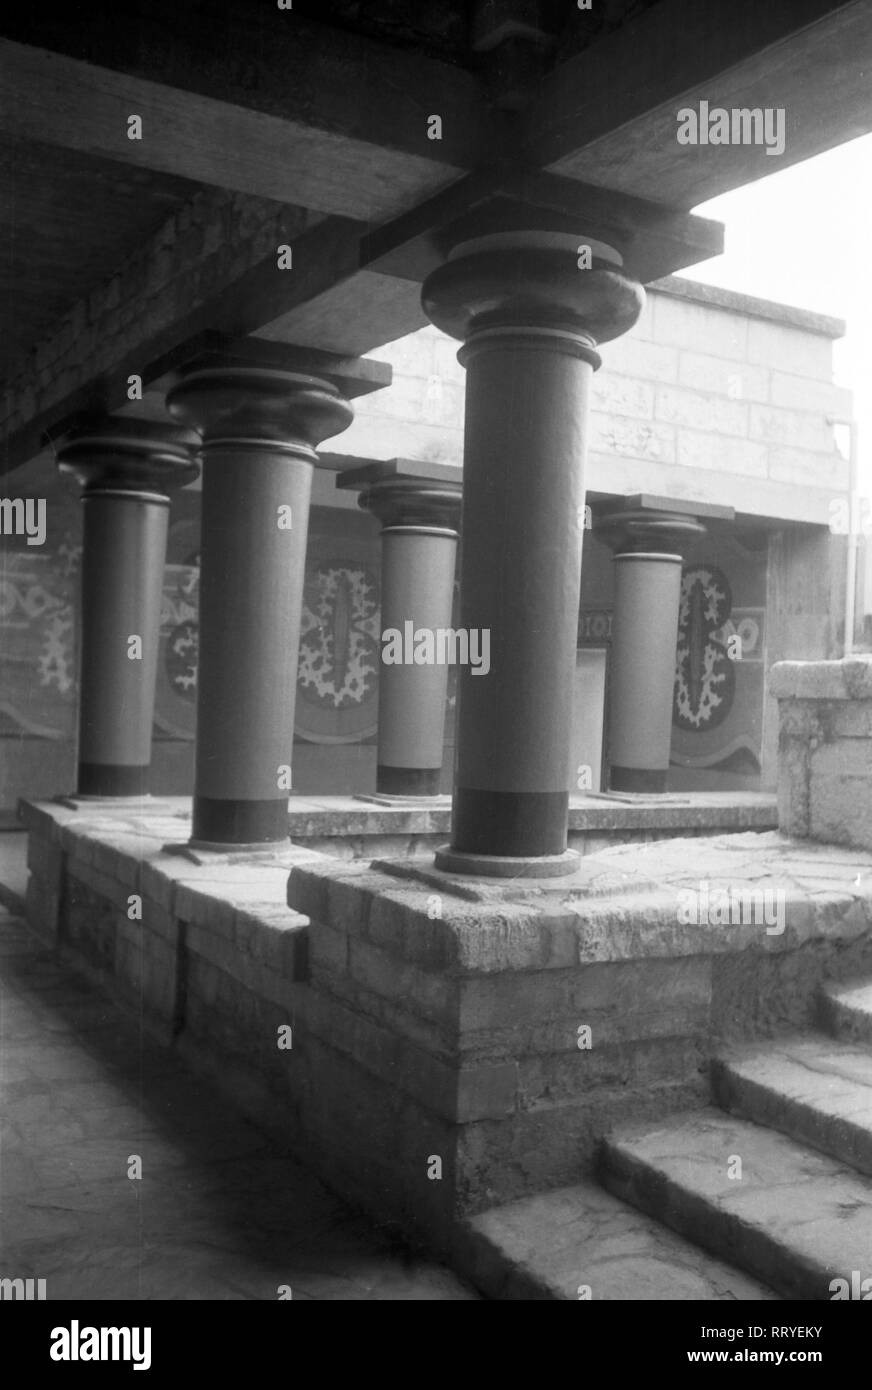 Griechenland, Greece - Säulen im Palast von Knossos auf der Insel Kreta, Griechenland, 1950er Jahre. Columns at Knossos Palace on the island of Crete, Greece, 1950s. Stock Photo